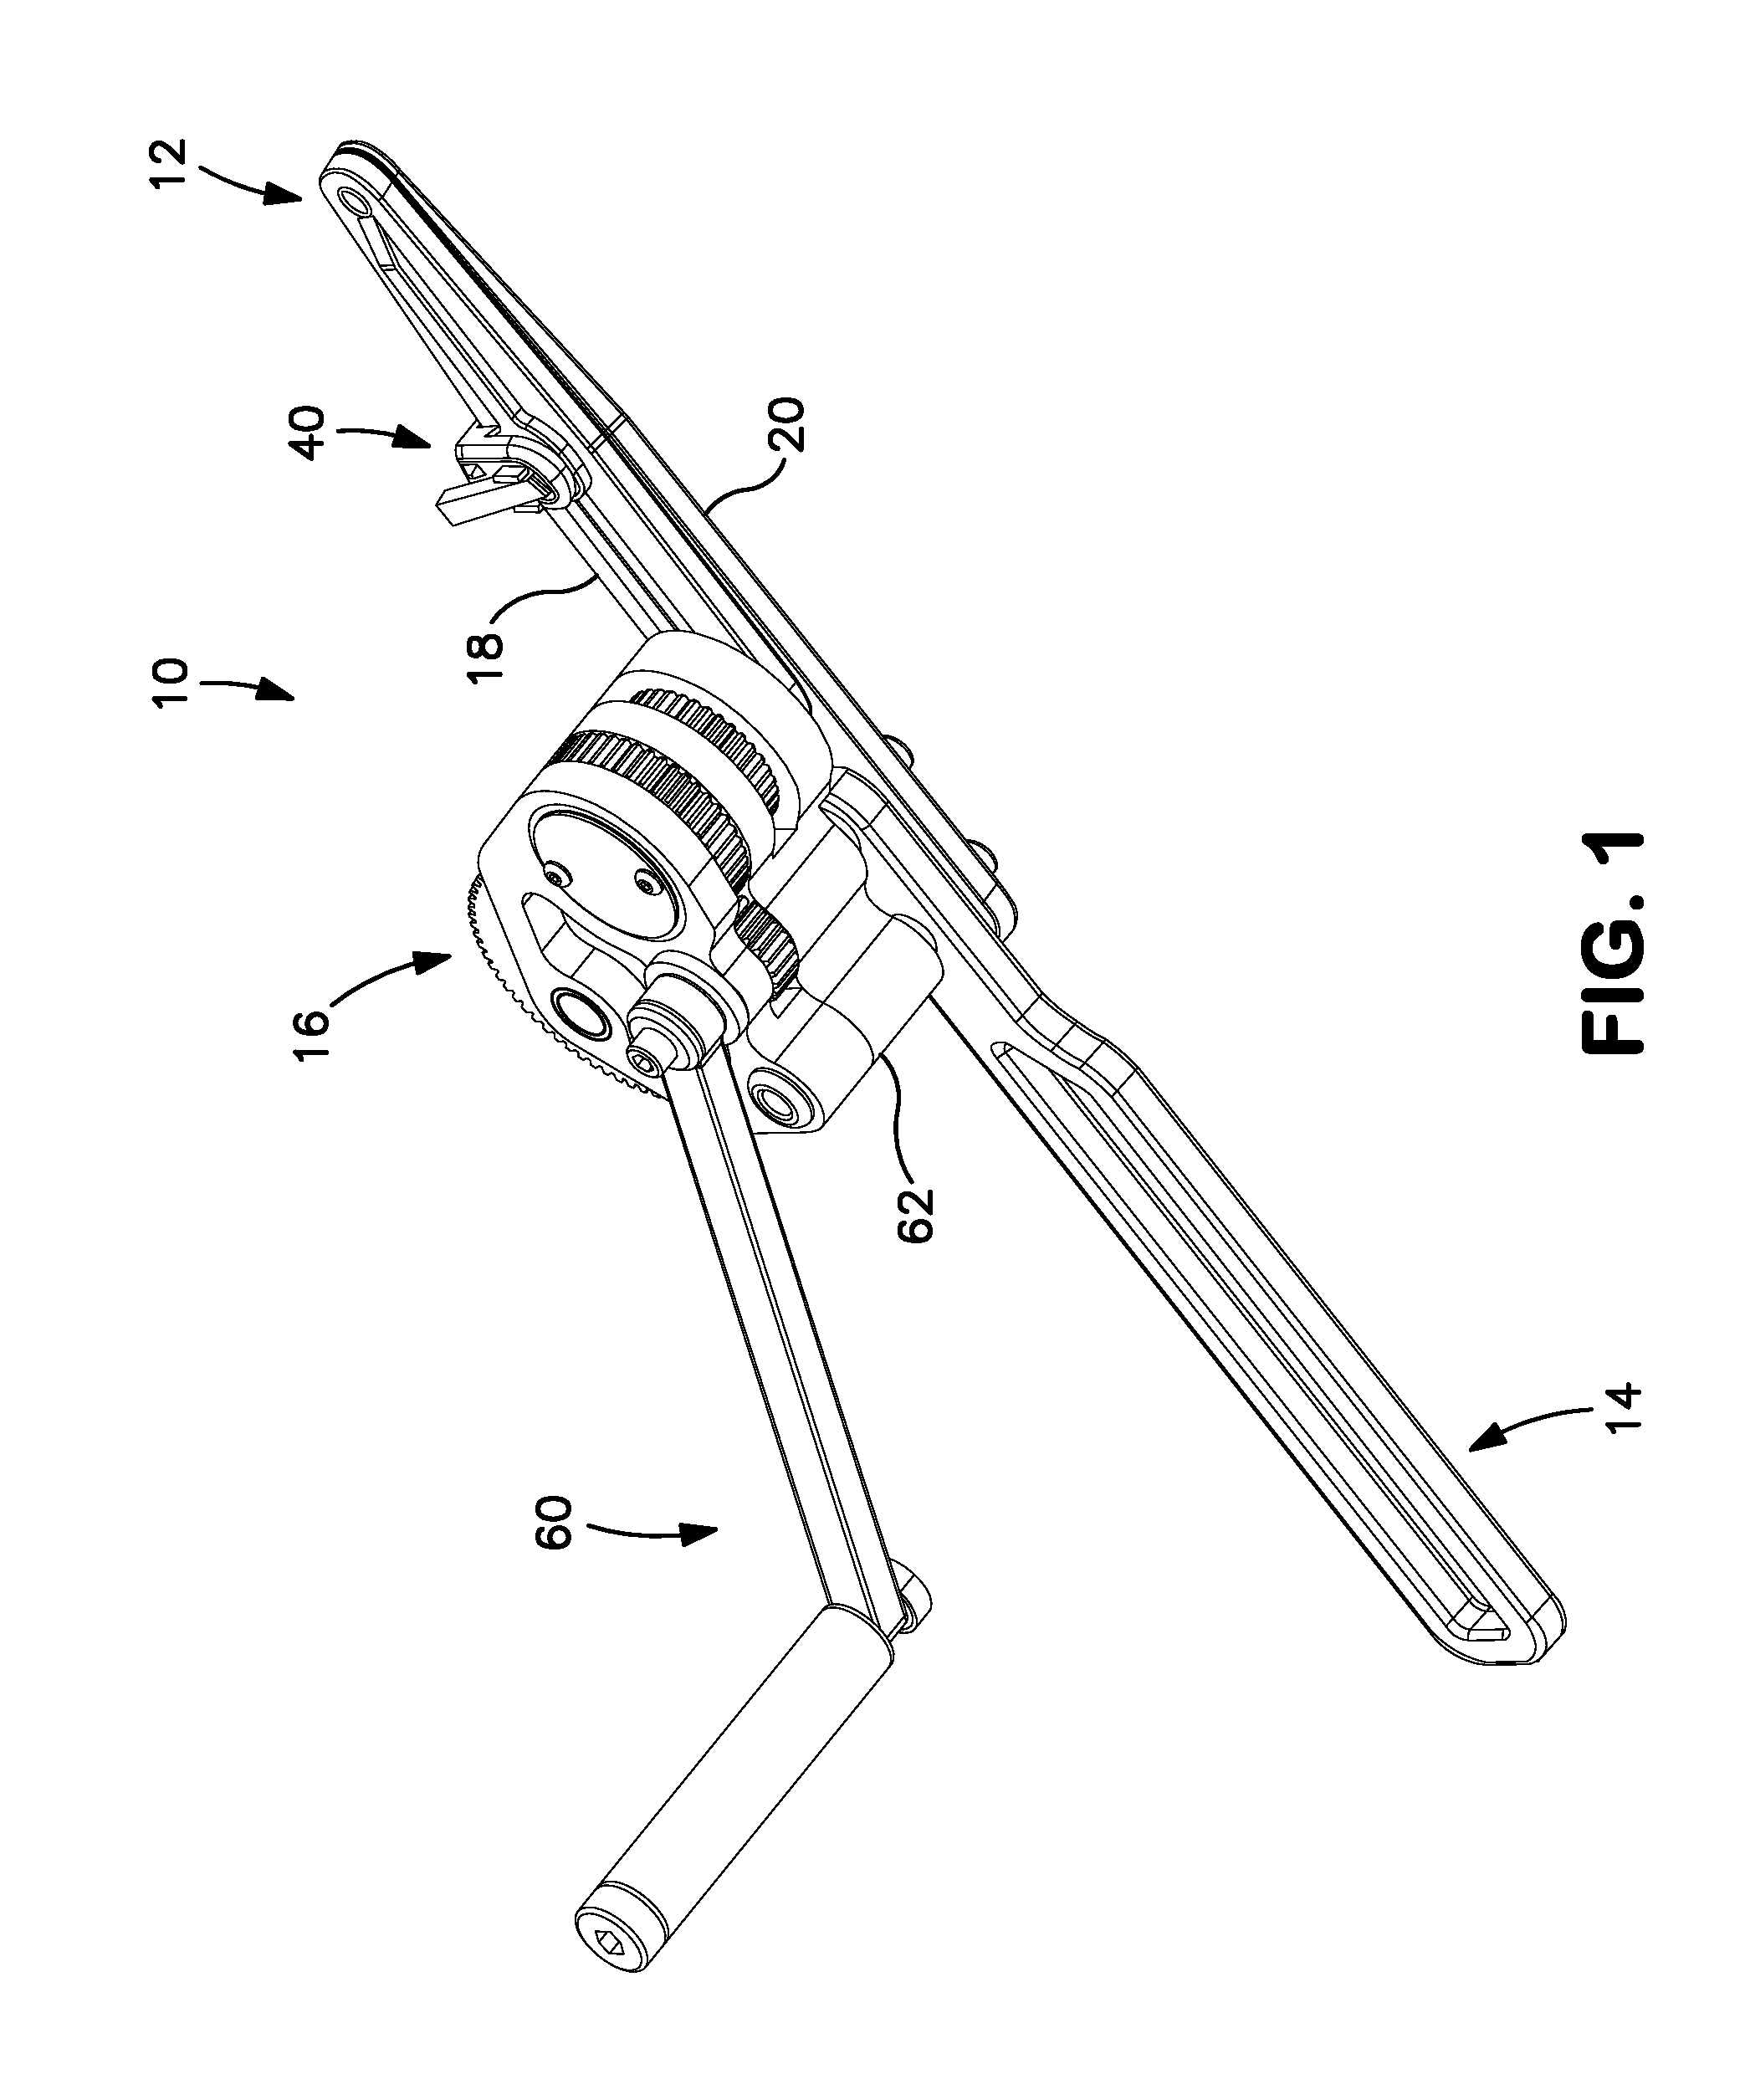 Oscillating rod cutter